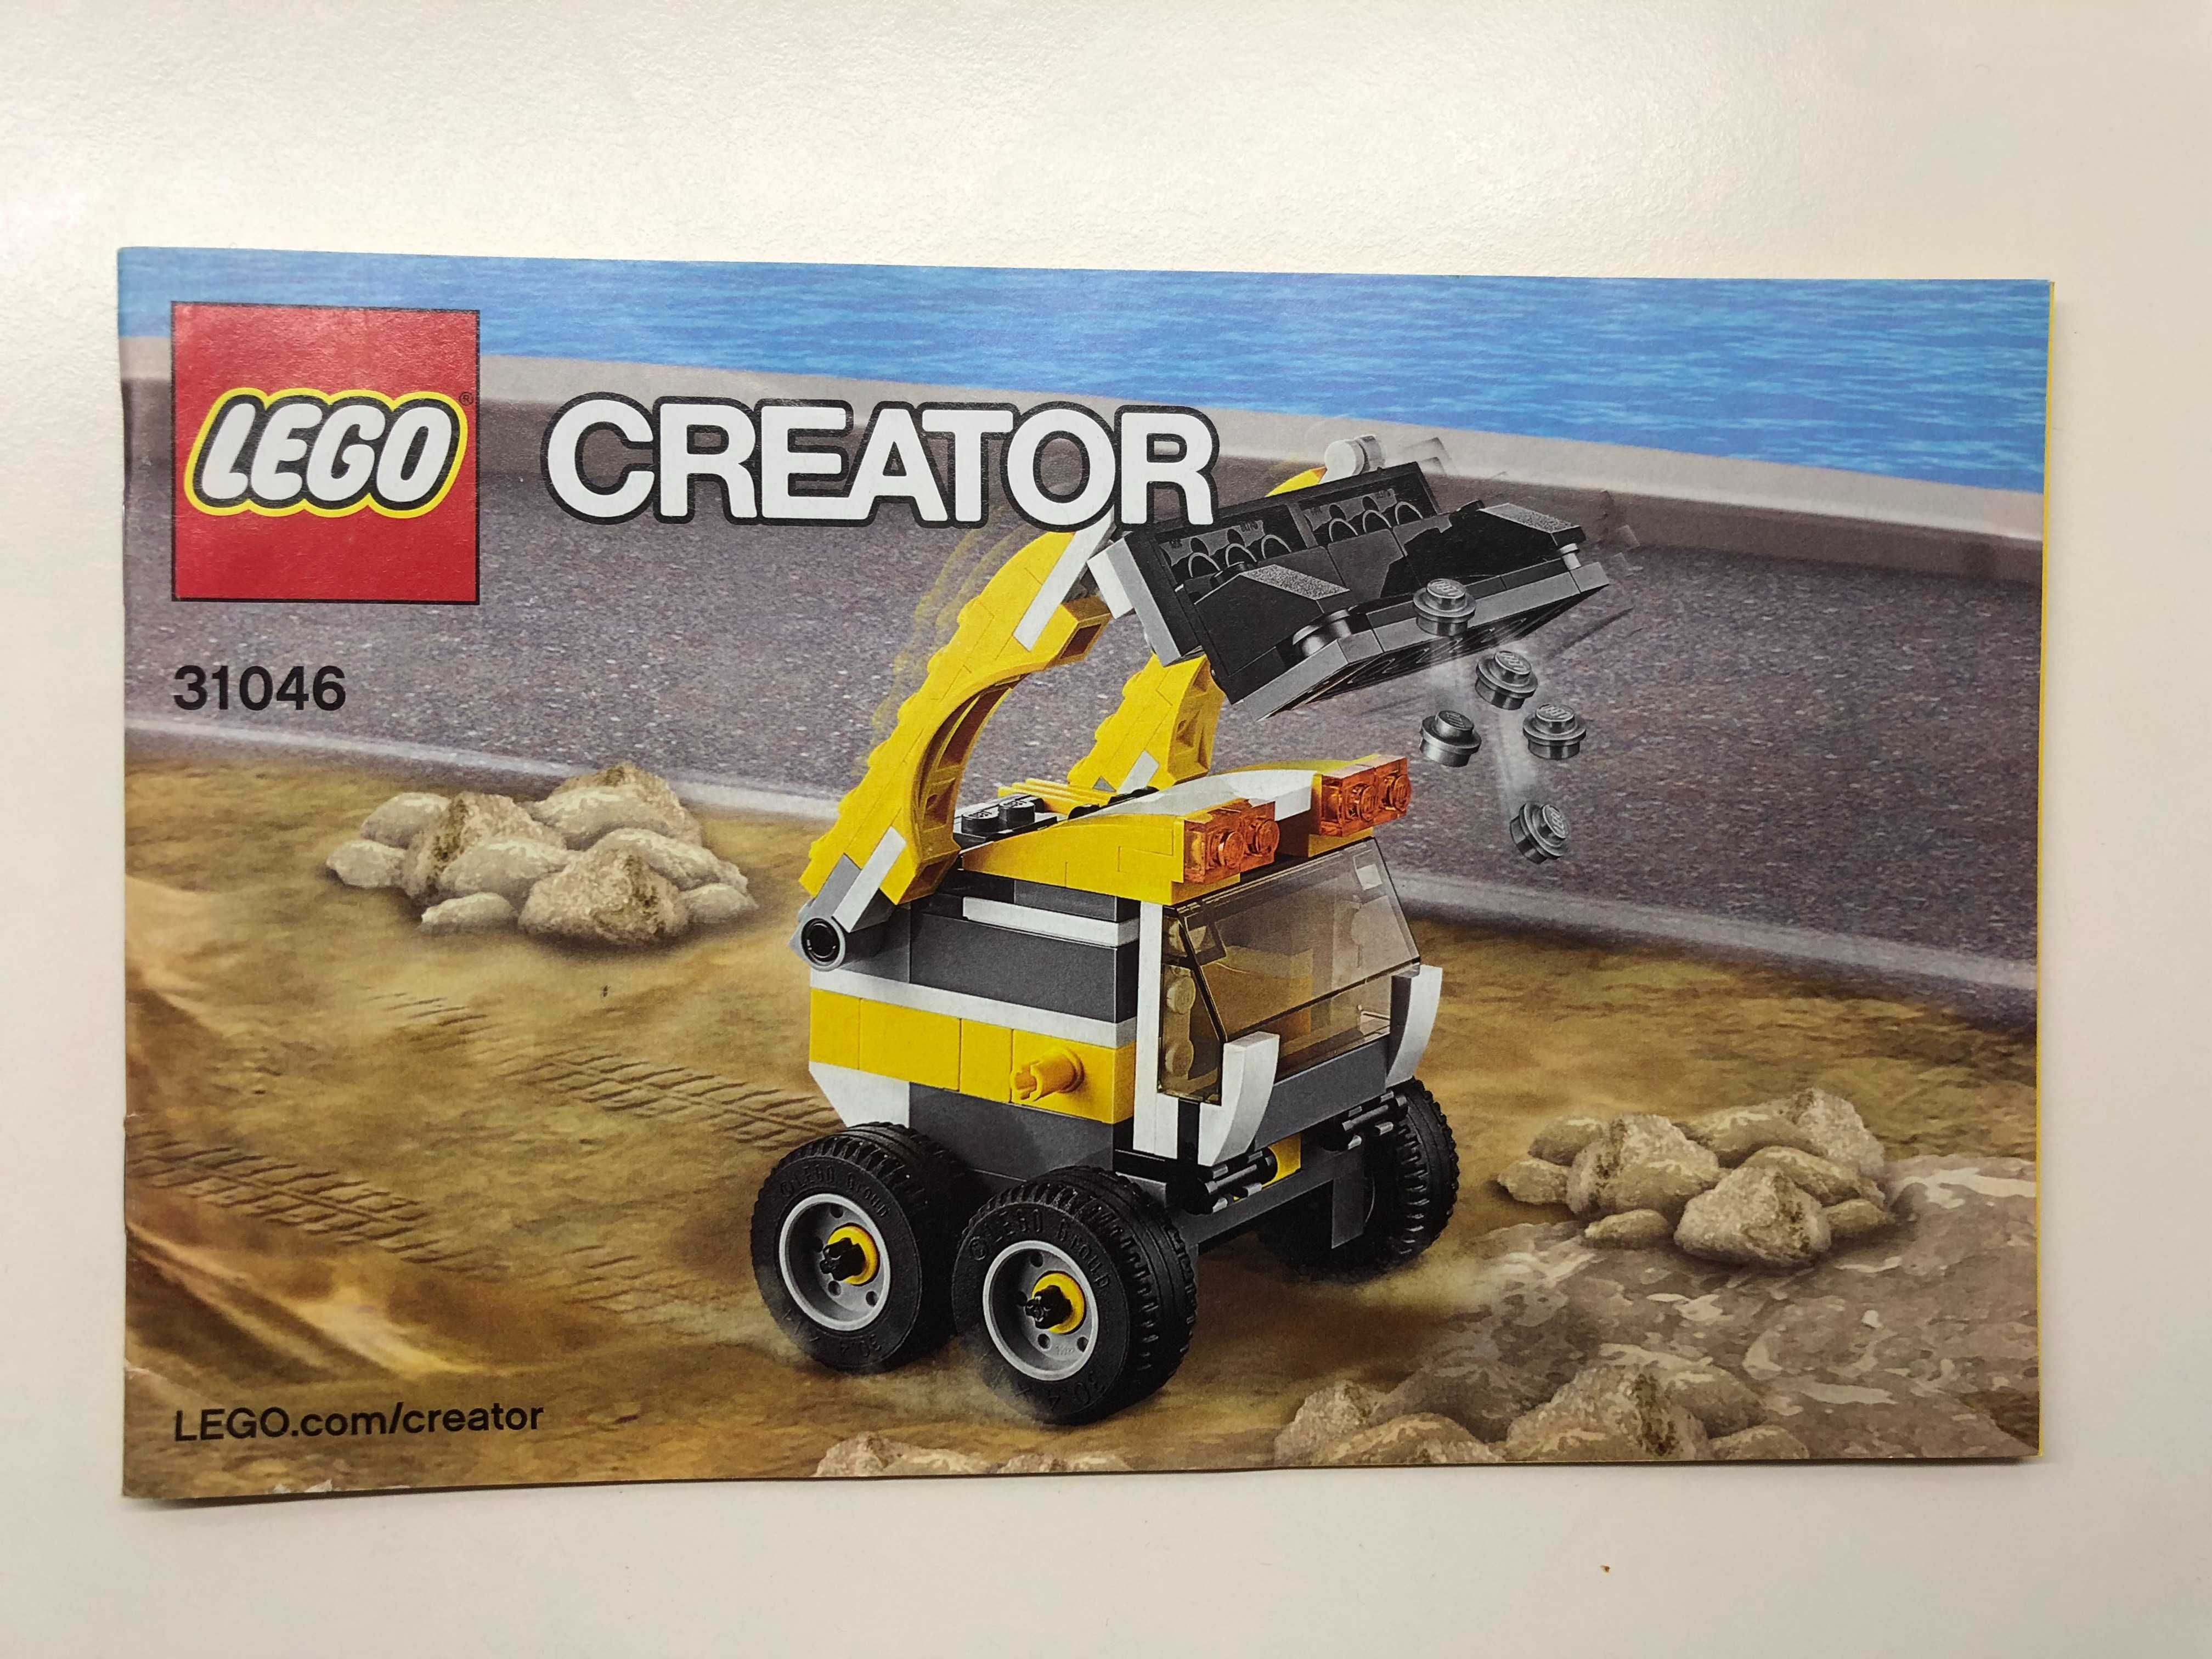 Kompletny zestaw LEGO Creator 3w1, pudełko, instrukcja